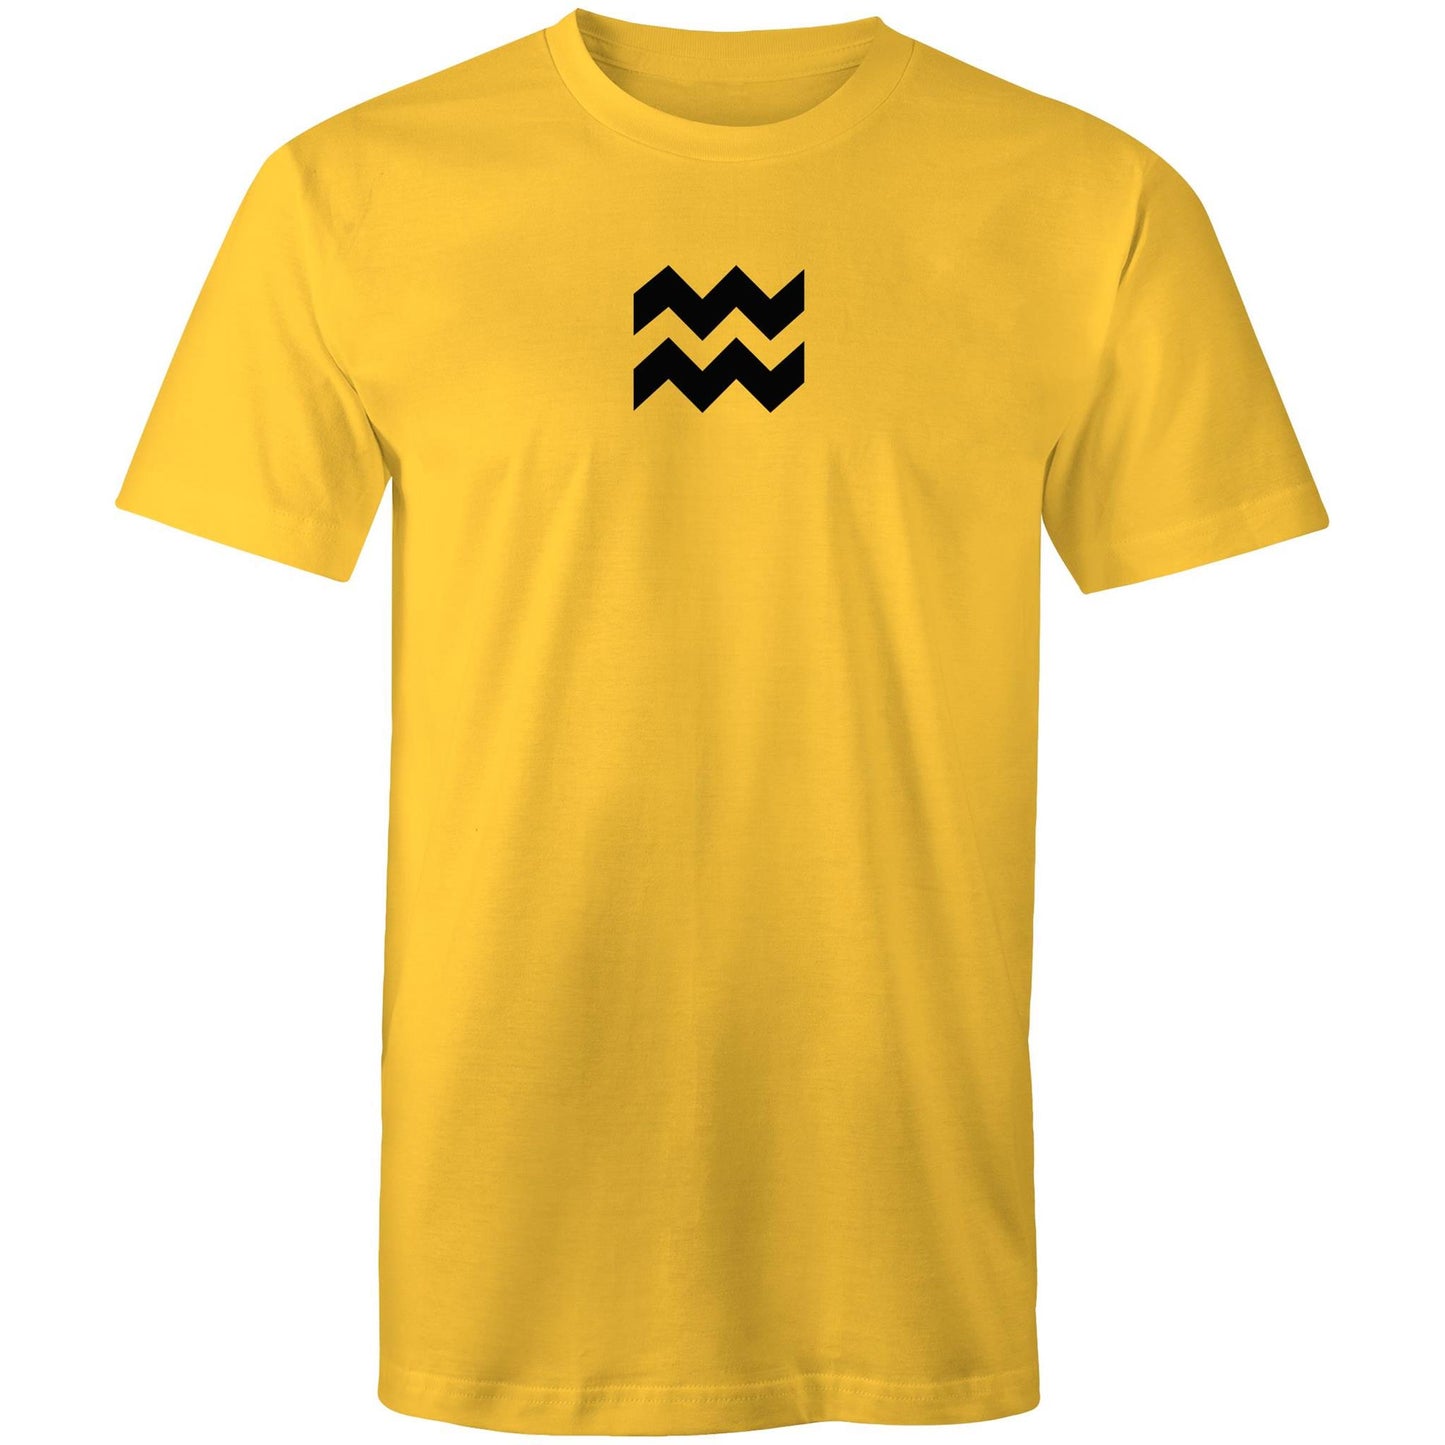 Aquarius T Shirts for Men (Unisex)